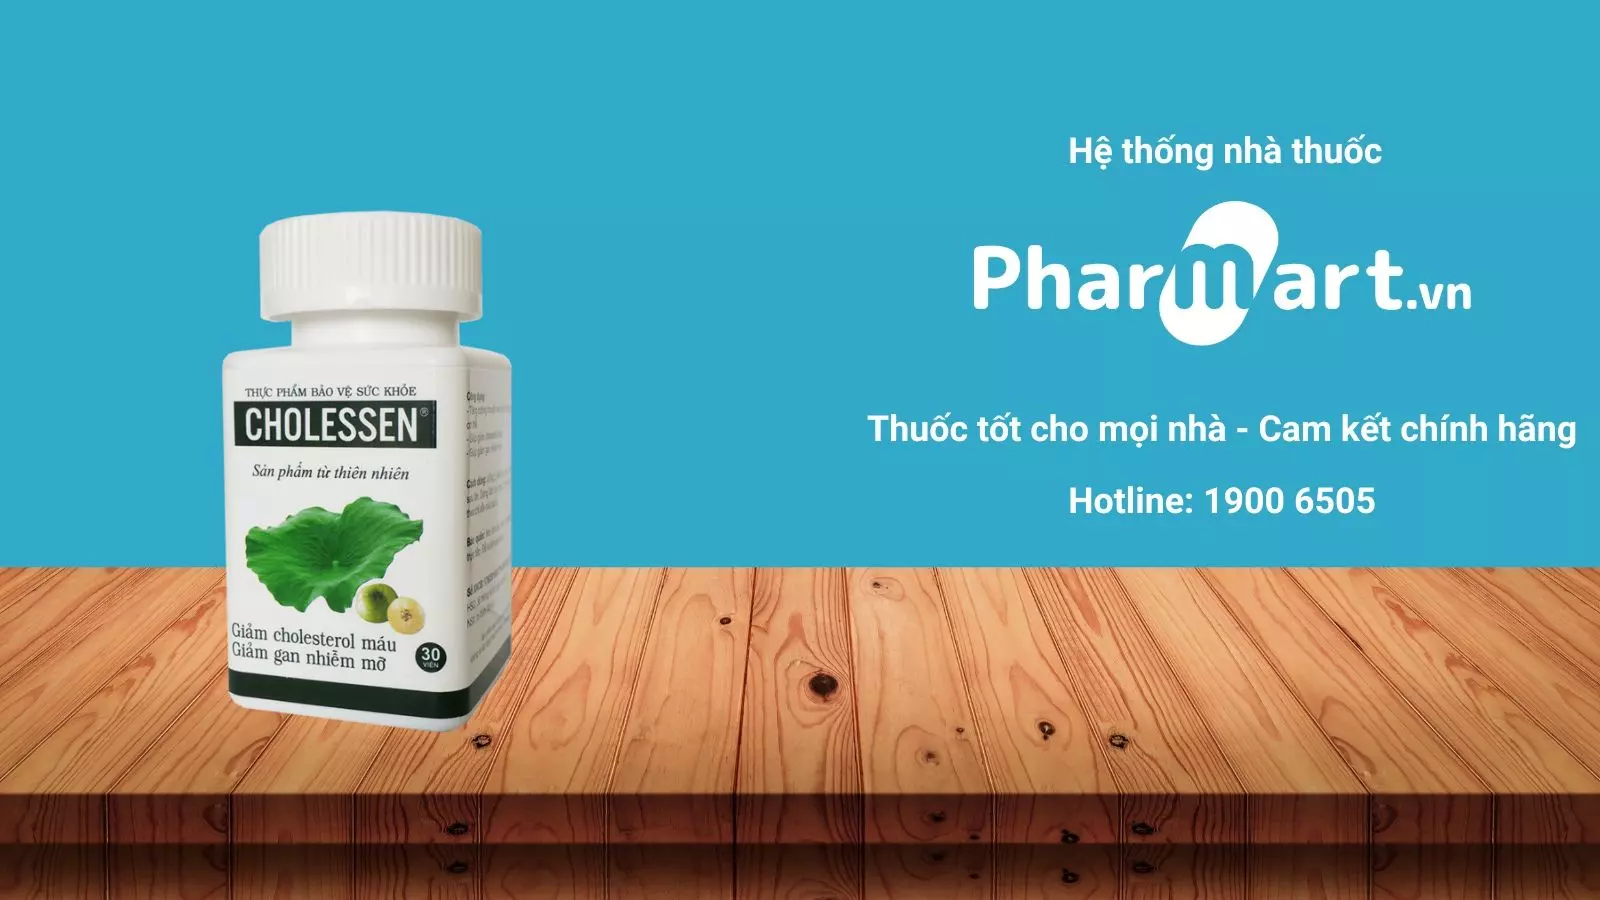 Cholessen hiện đang được bán chính hãng tại Nhà thuốc Pharmart.vn